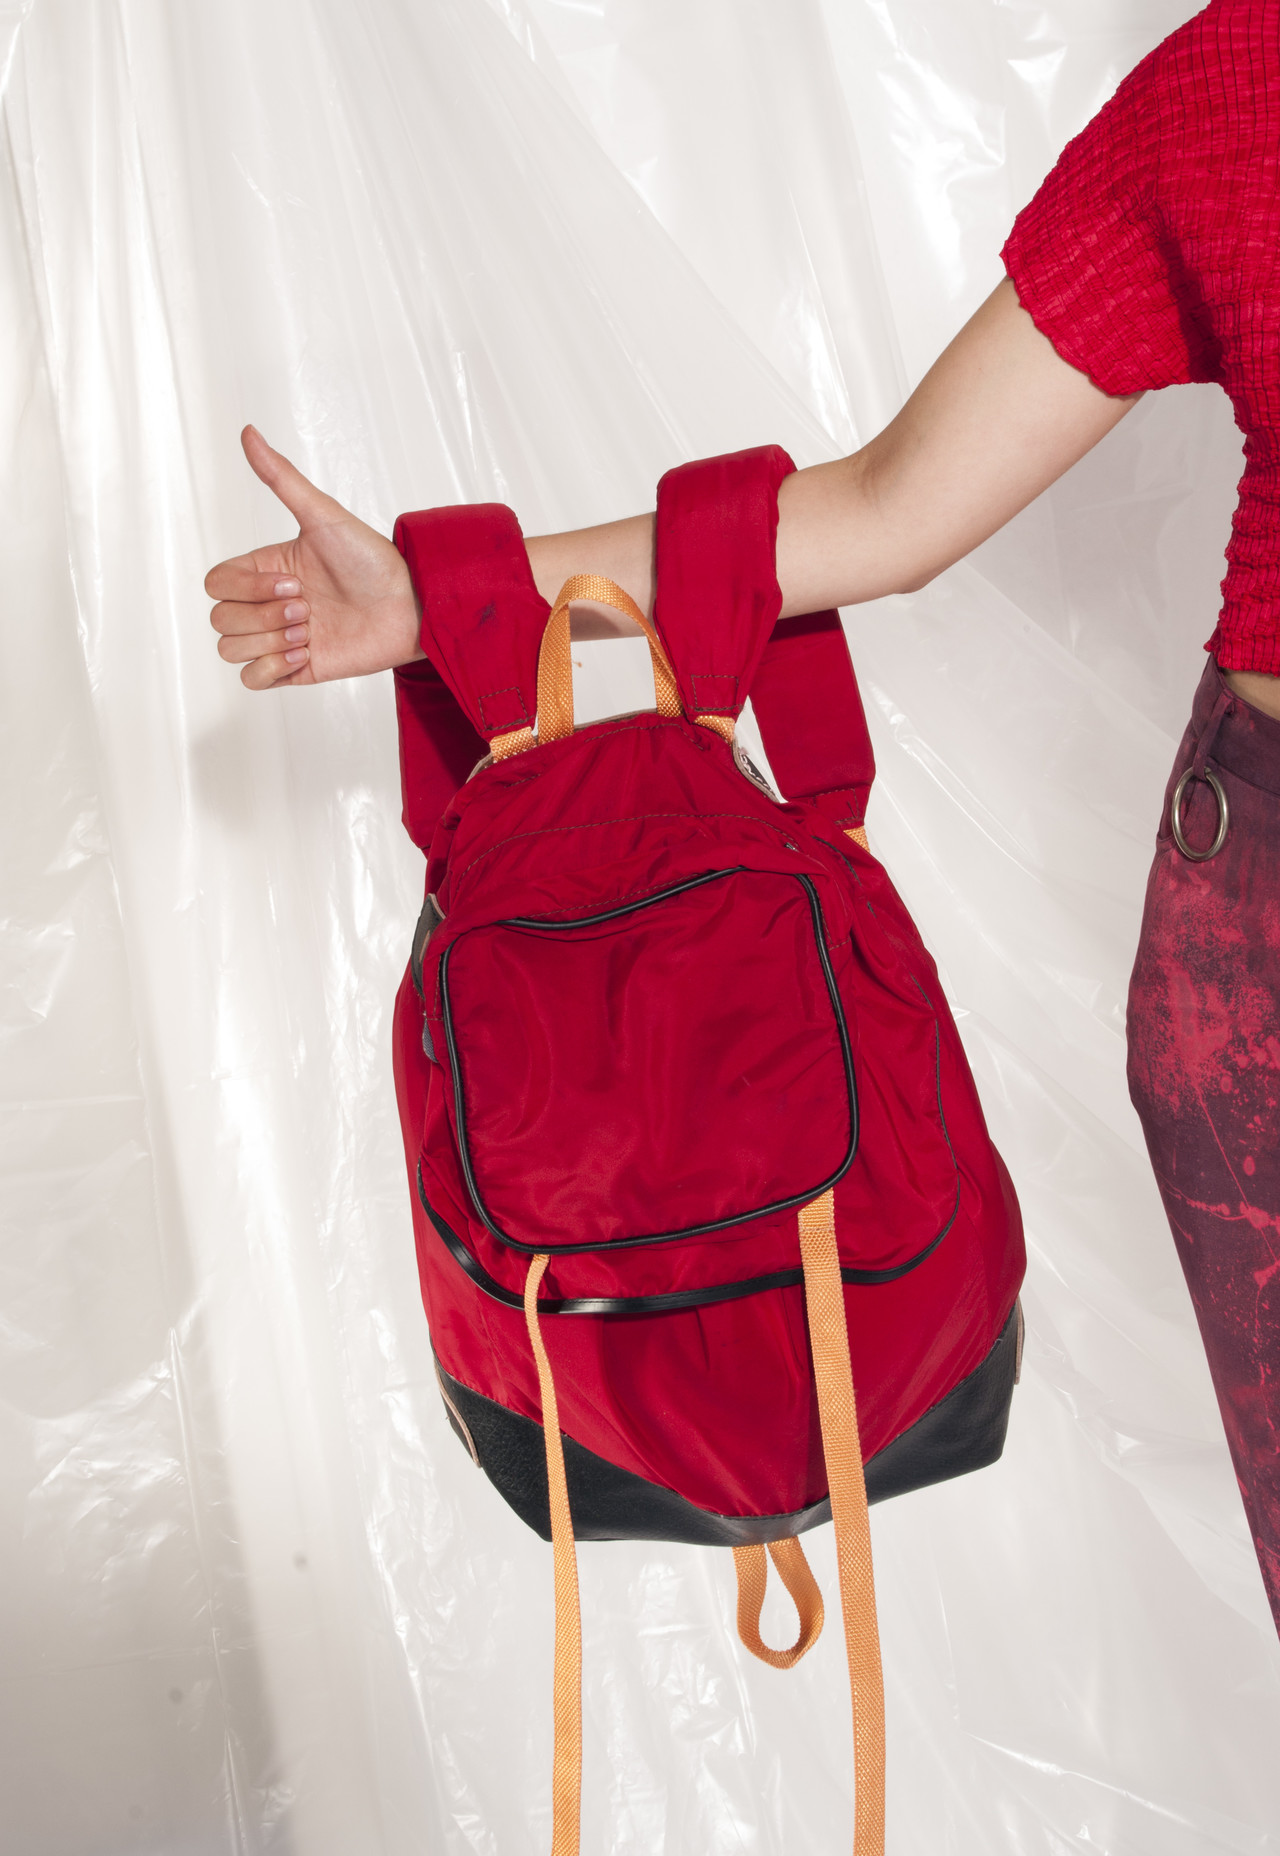 Vintage rucksack 70s hitchhiker red backpack – Pop Sick Vintage